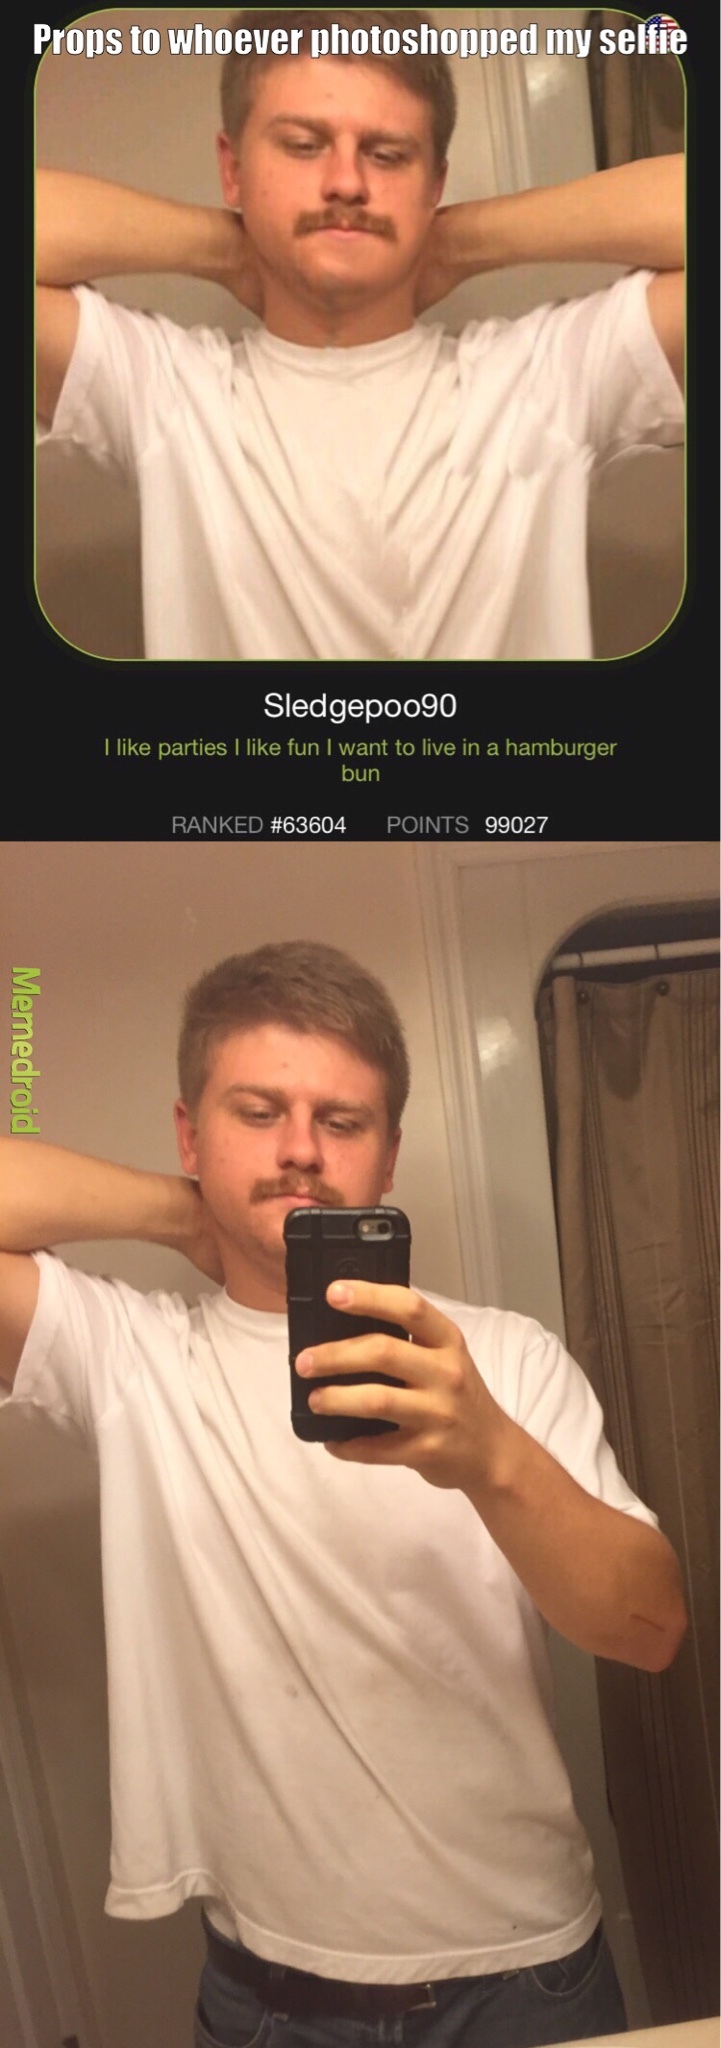 sledgepoo90 photoshopped me. - meme